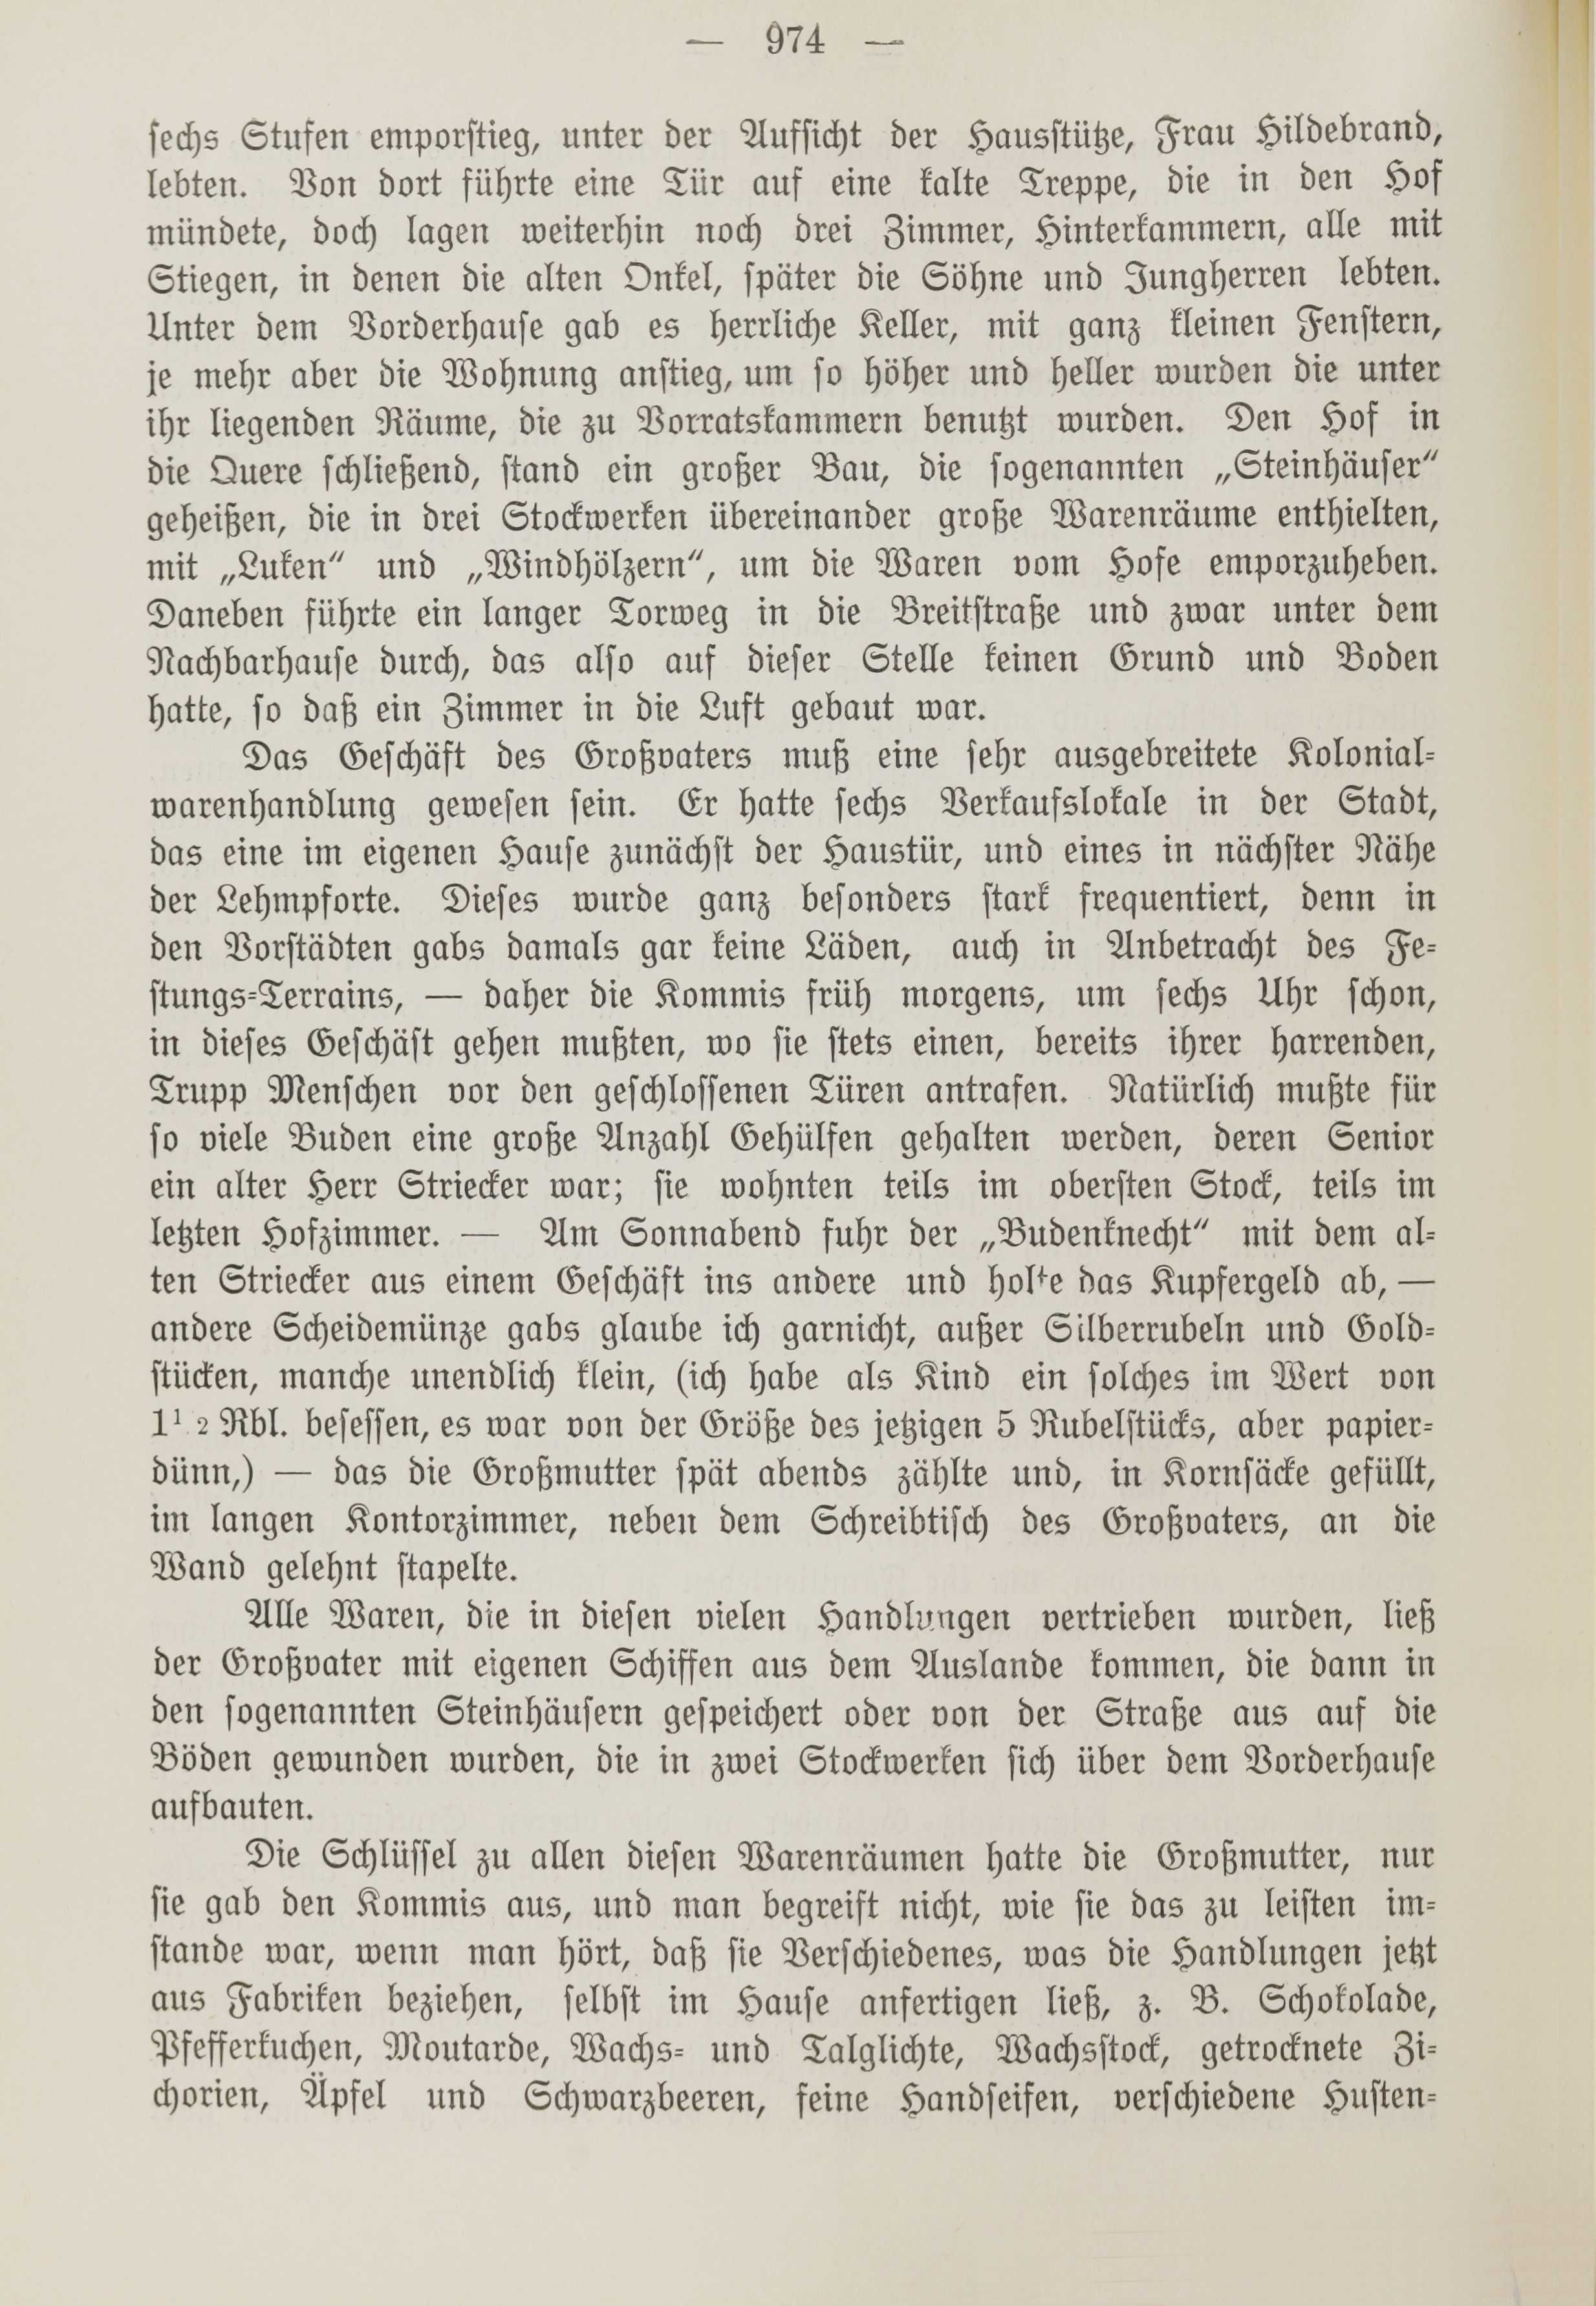 Deutsche Monatsschrift für Russland [1] (1912) | 982. (974) Main body of text